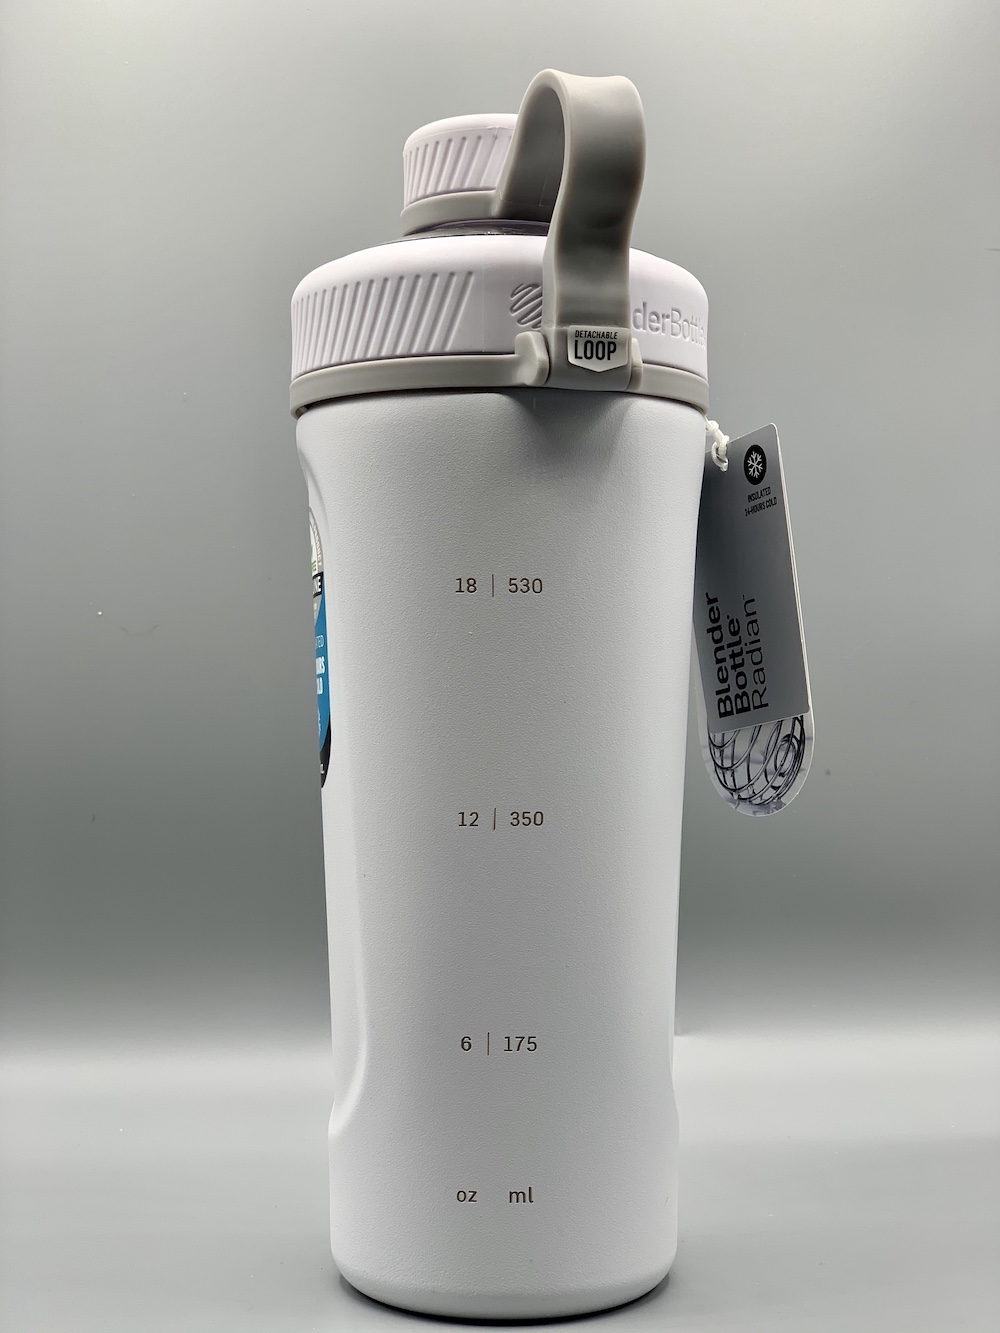 Stainless Steel 2kk Blender Bottle – 2KrazyKetos